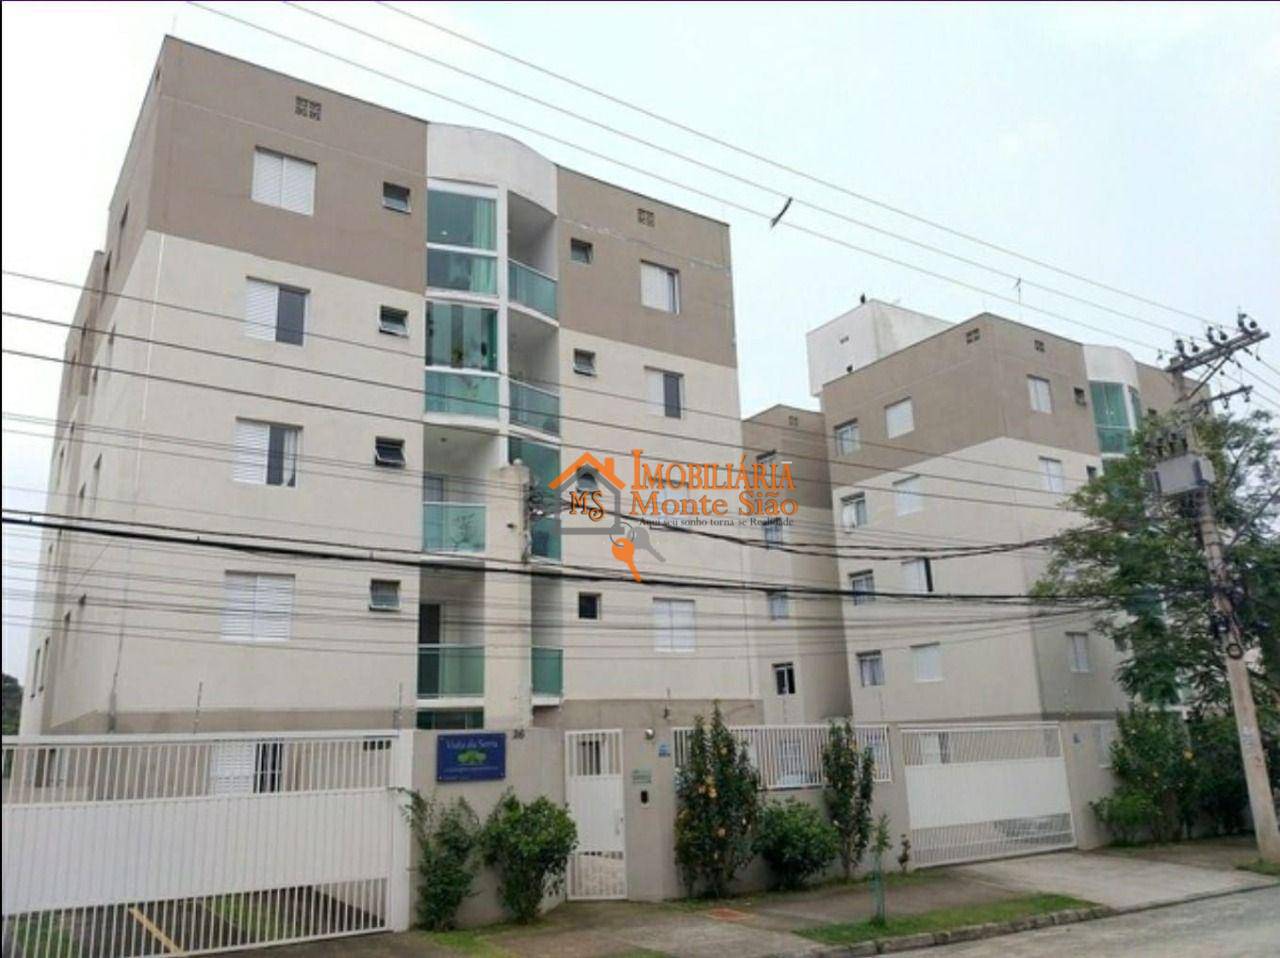 Apartamento com 2 dormitórios à venda, 49 m² por R$ 297.000,00 - Parque Continental II - Guarulhos/SP